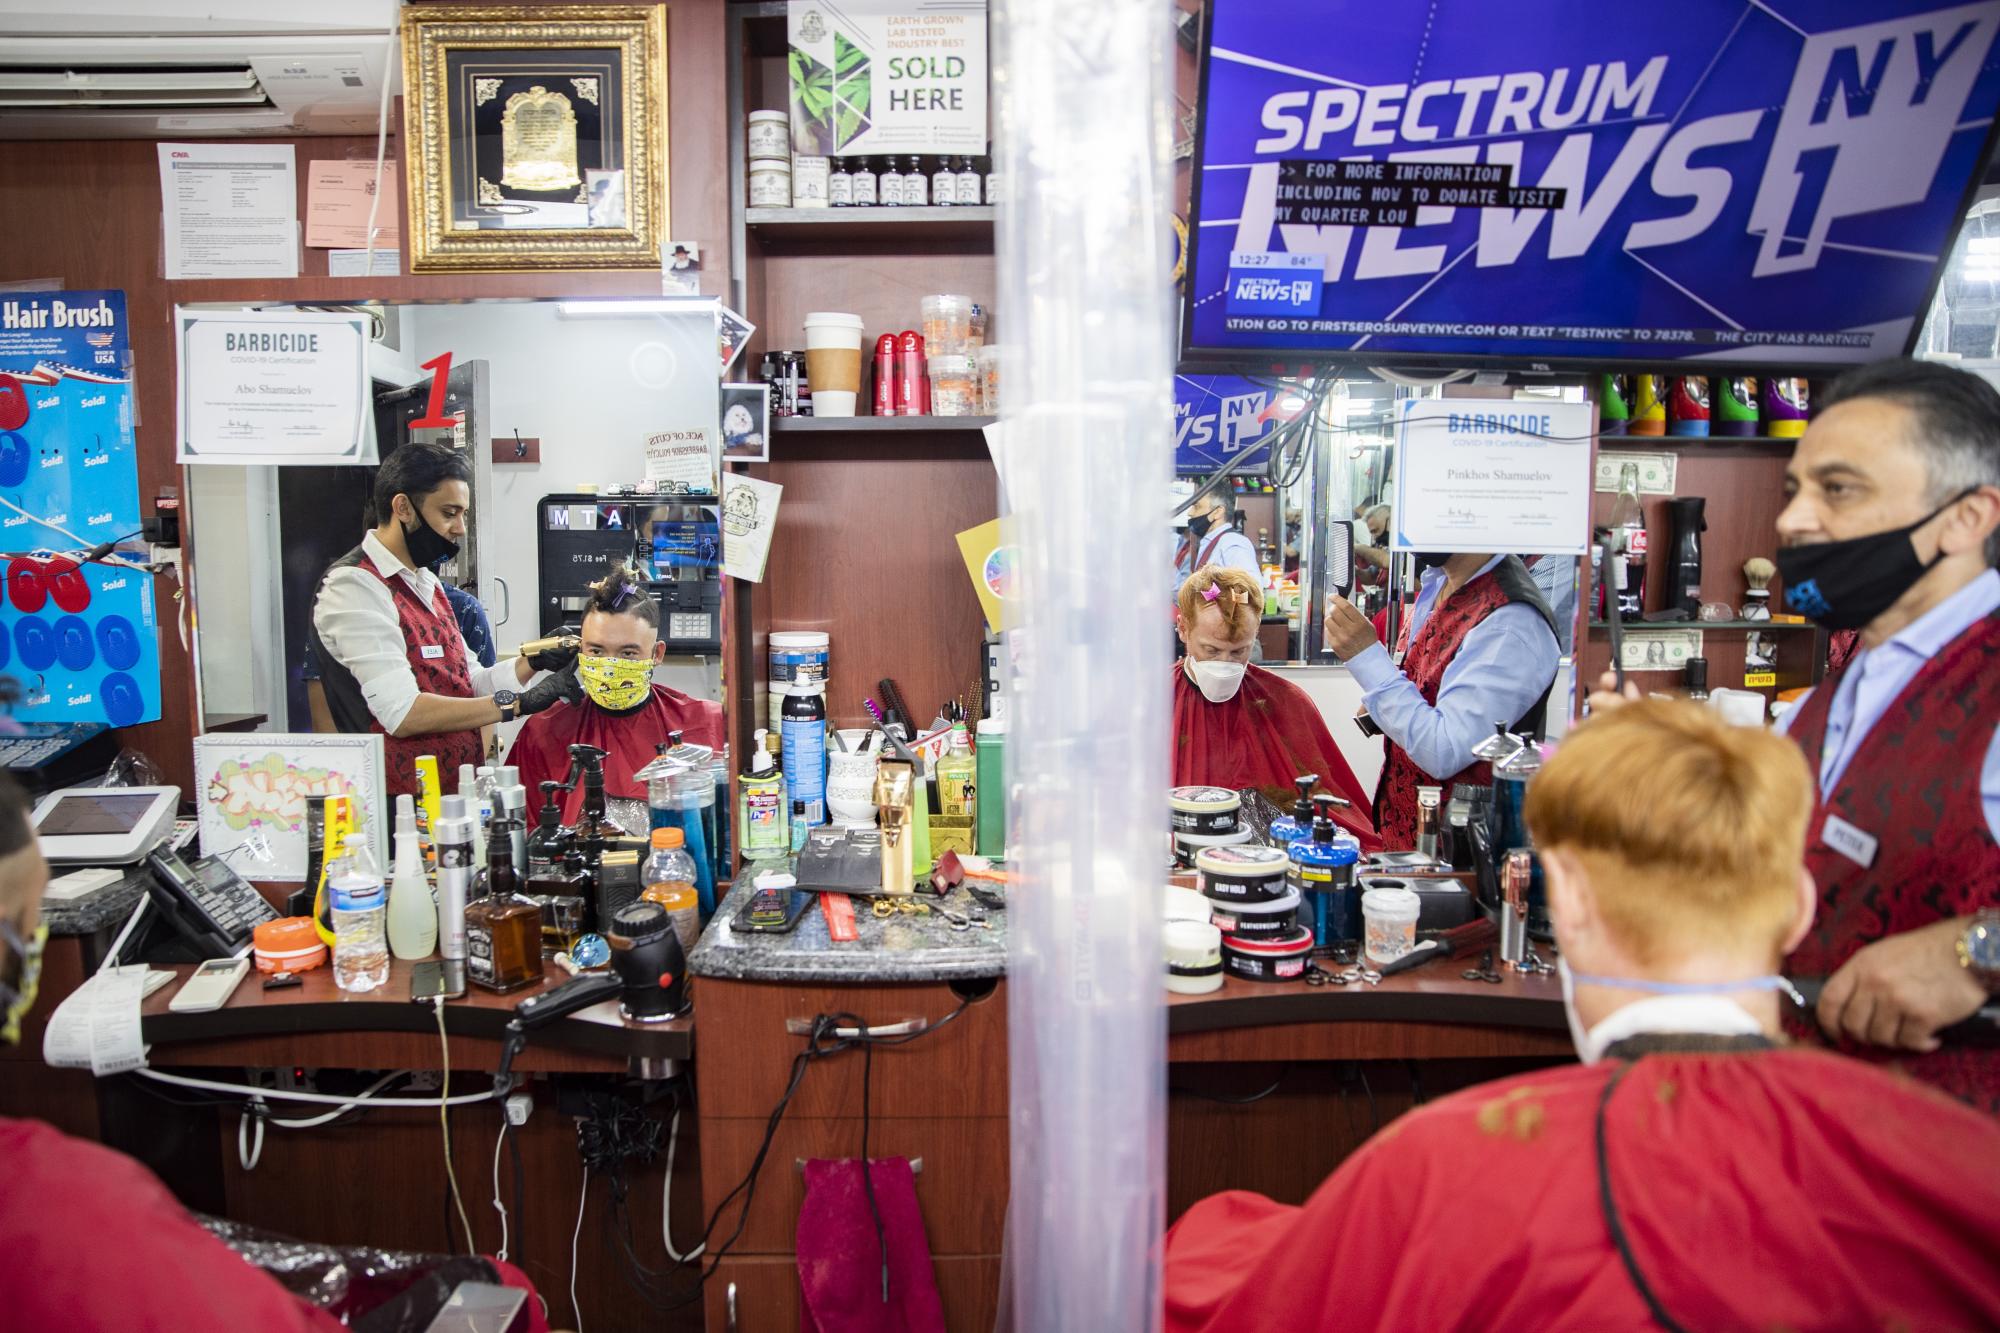 Clientes y barberos deben utilizar mascarillas dentro del establecimiento  (AP Photo/John Minchillo)